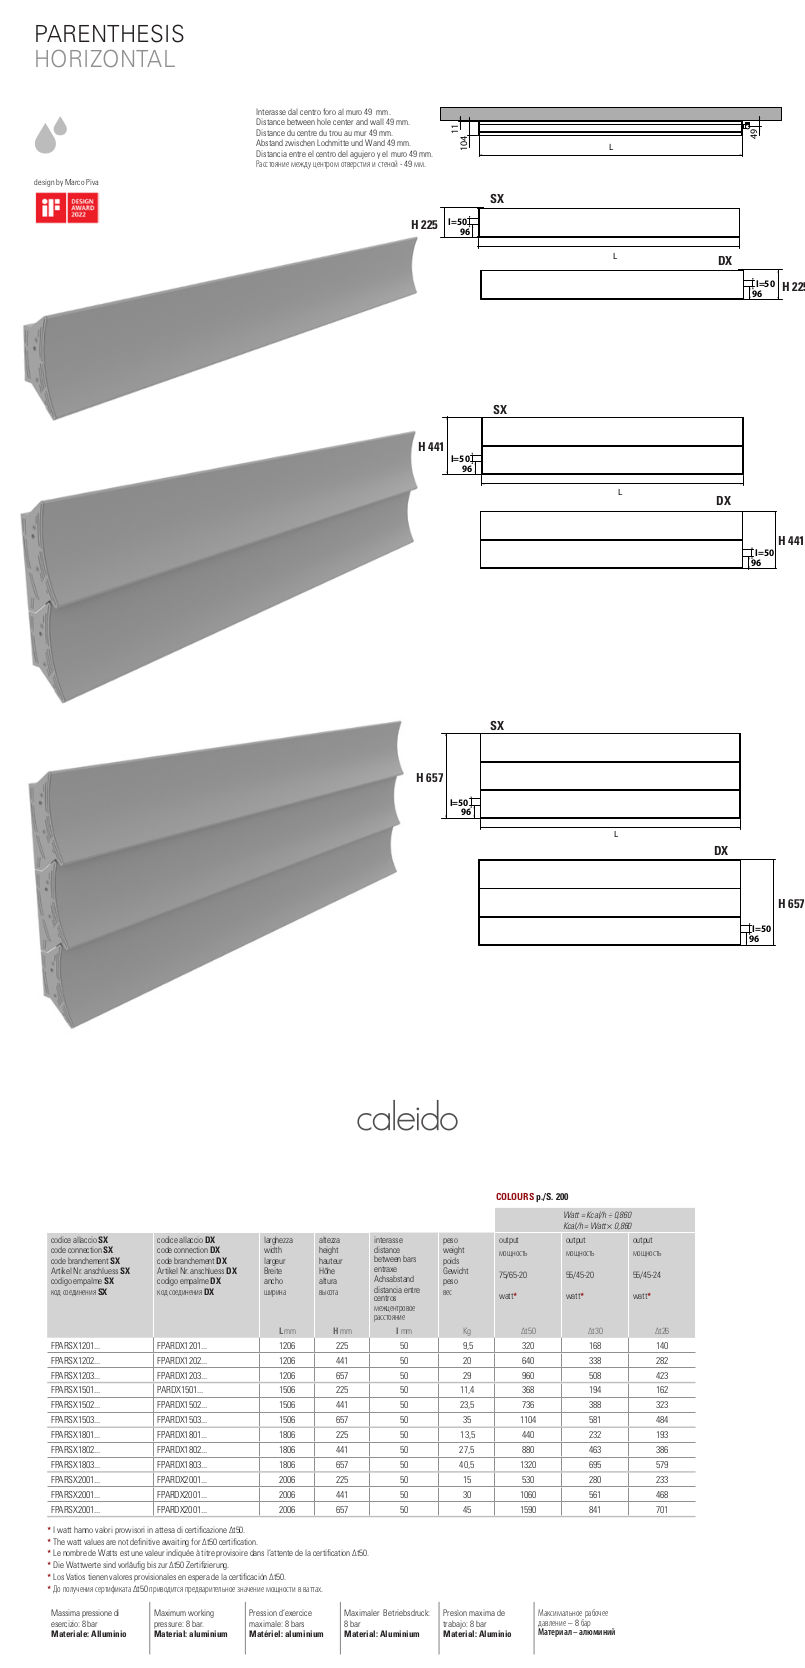 data sheet parenthesis horizontal caleido radiator